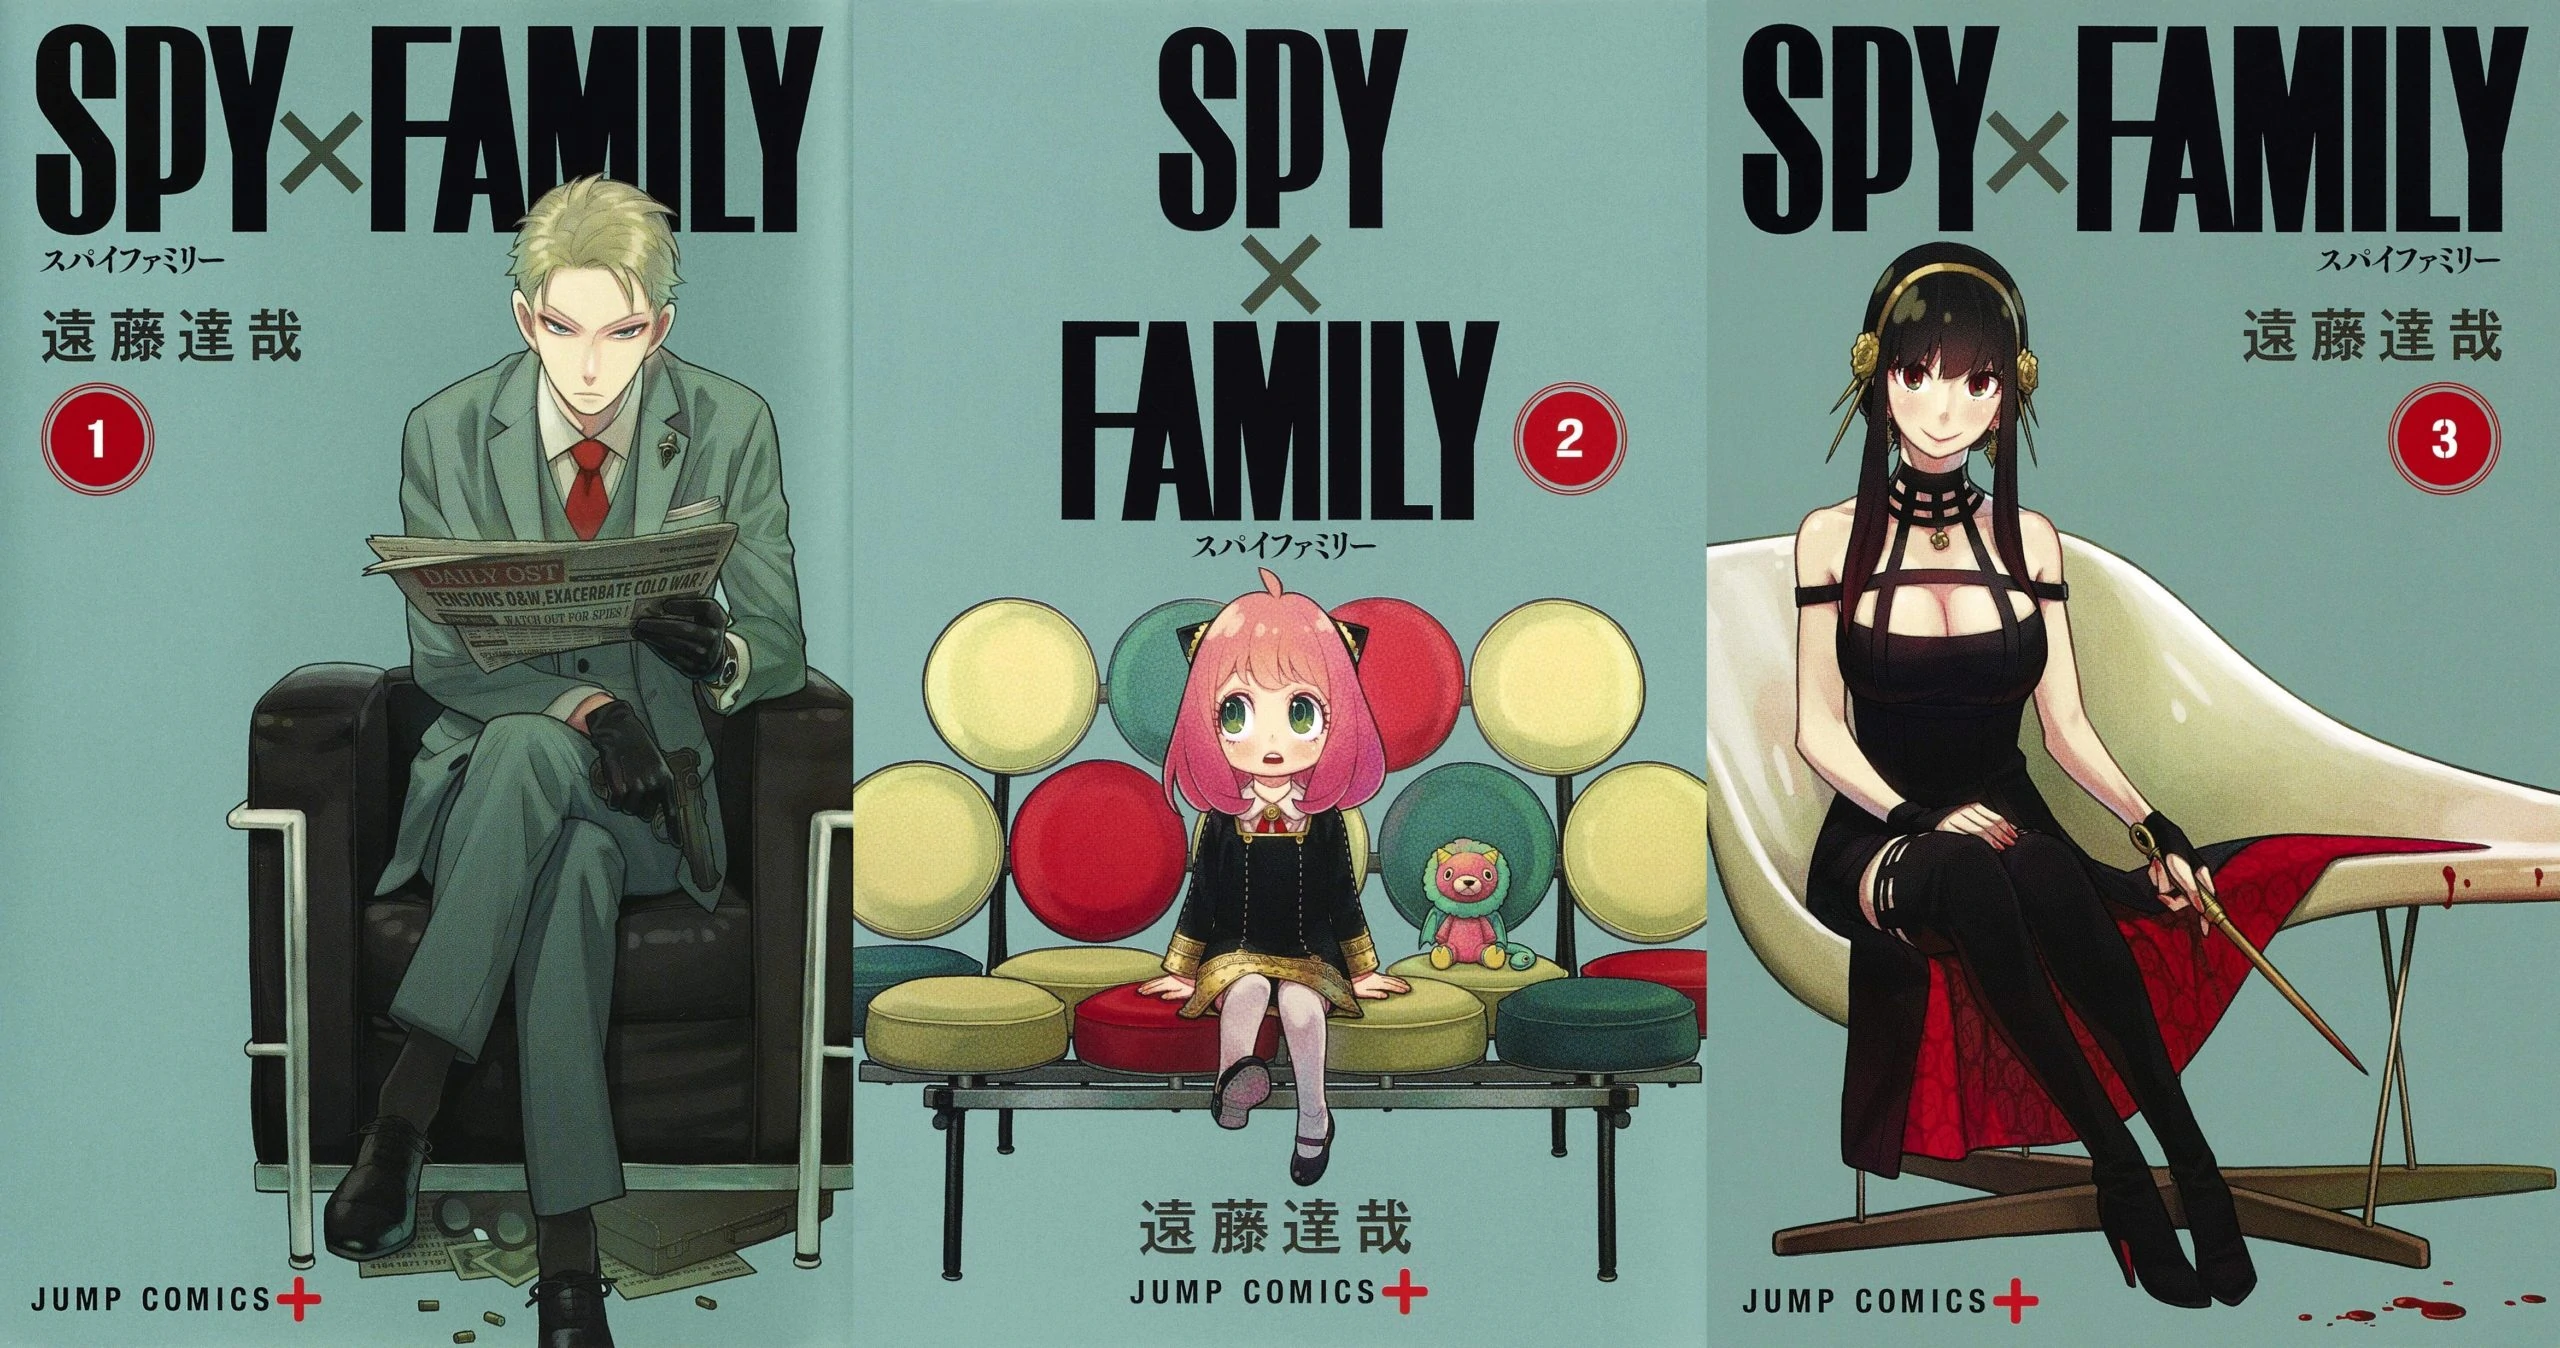 Spy x family image 05 manga